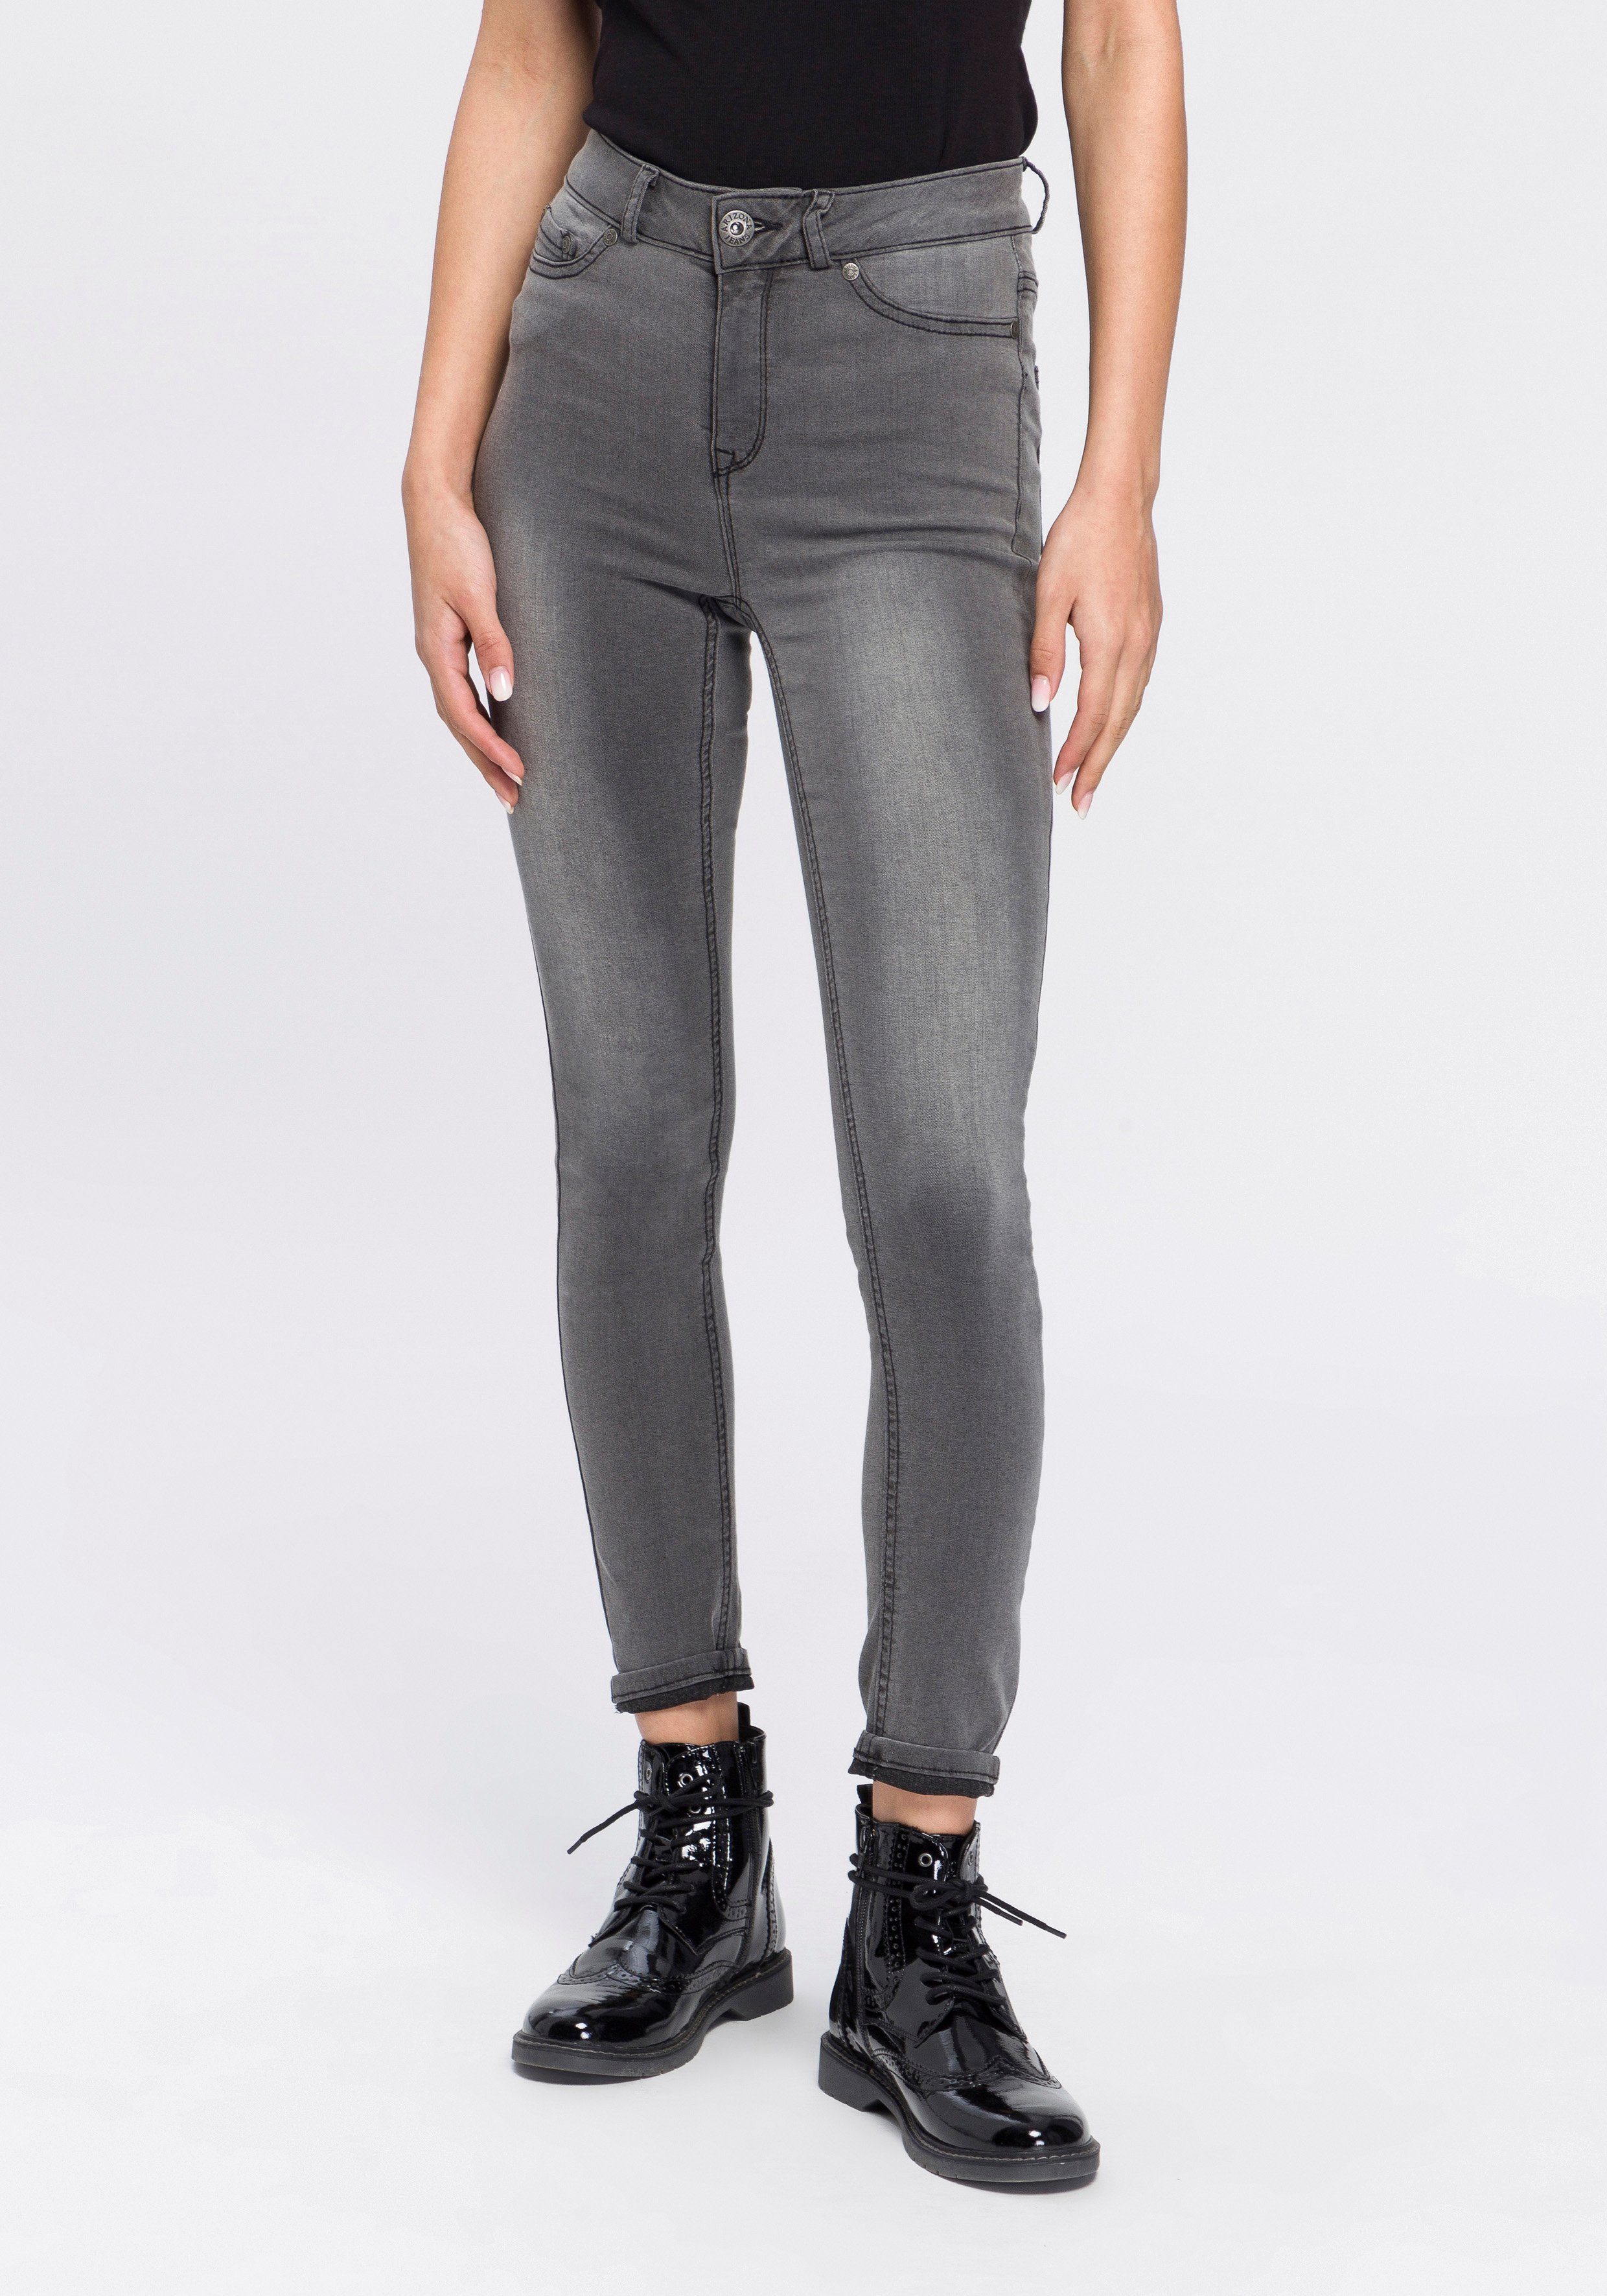 Graue Skinny-Jeans online kaufen | OTTO